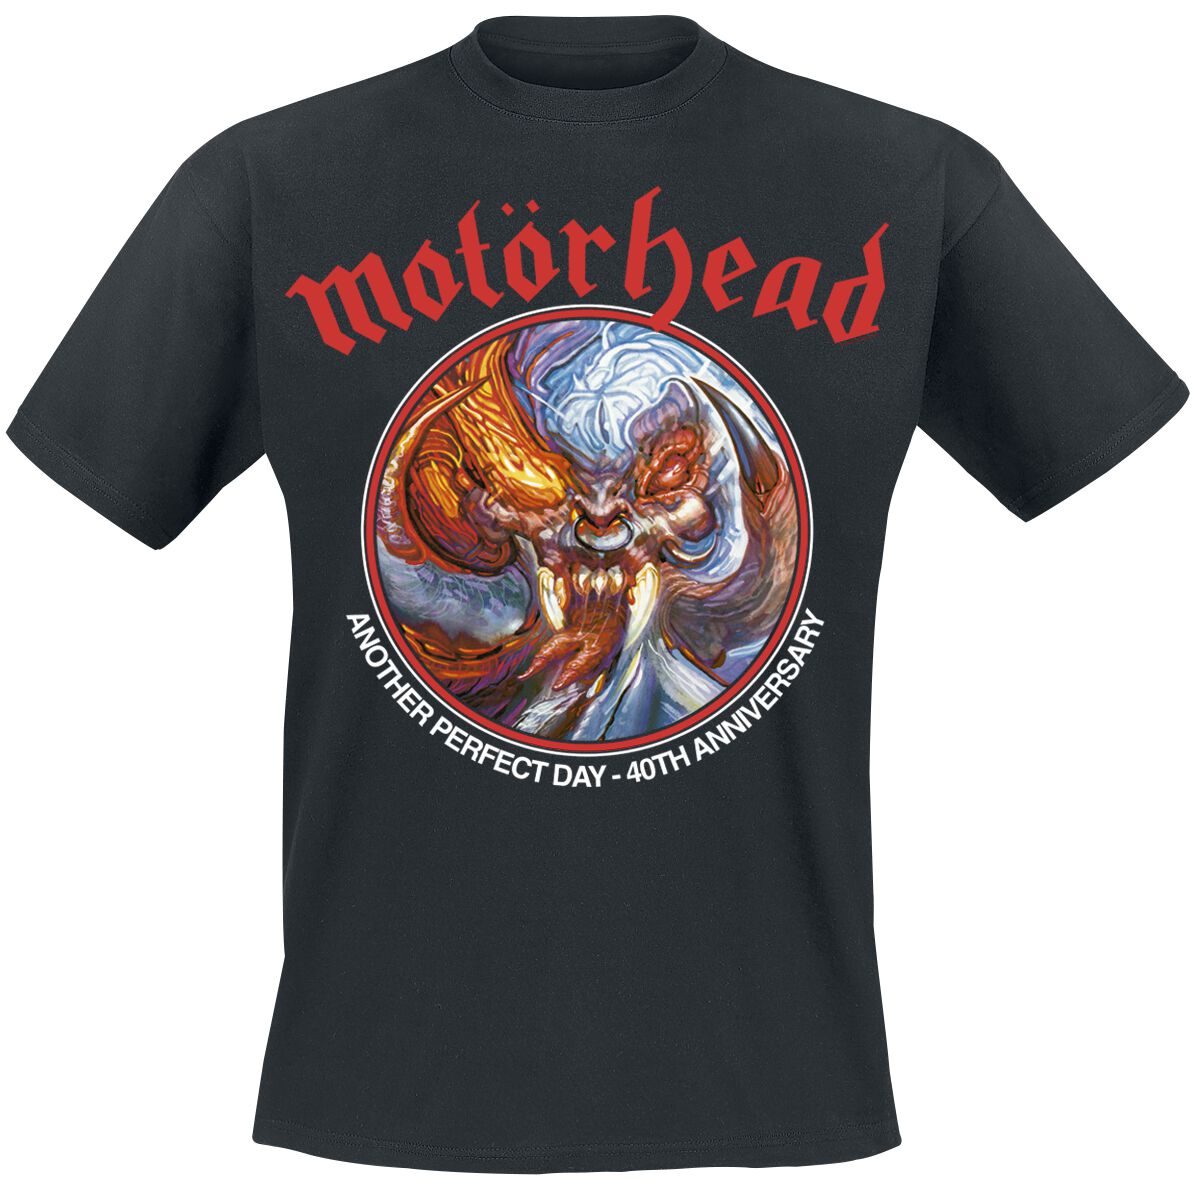 Motörhead T-Shirt - Another Perfect Day Anniversary - S bis 4XL - für Männer - Größe XL - schwarz  - Lizenziertes Merchandise!